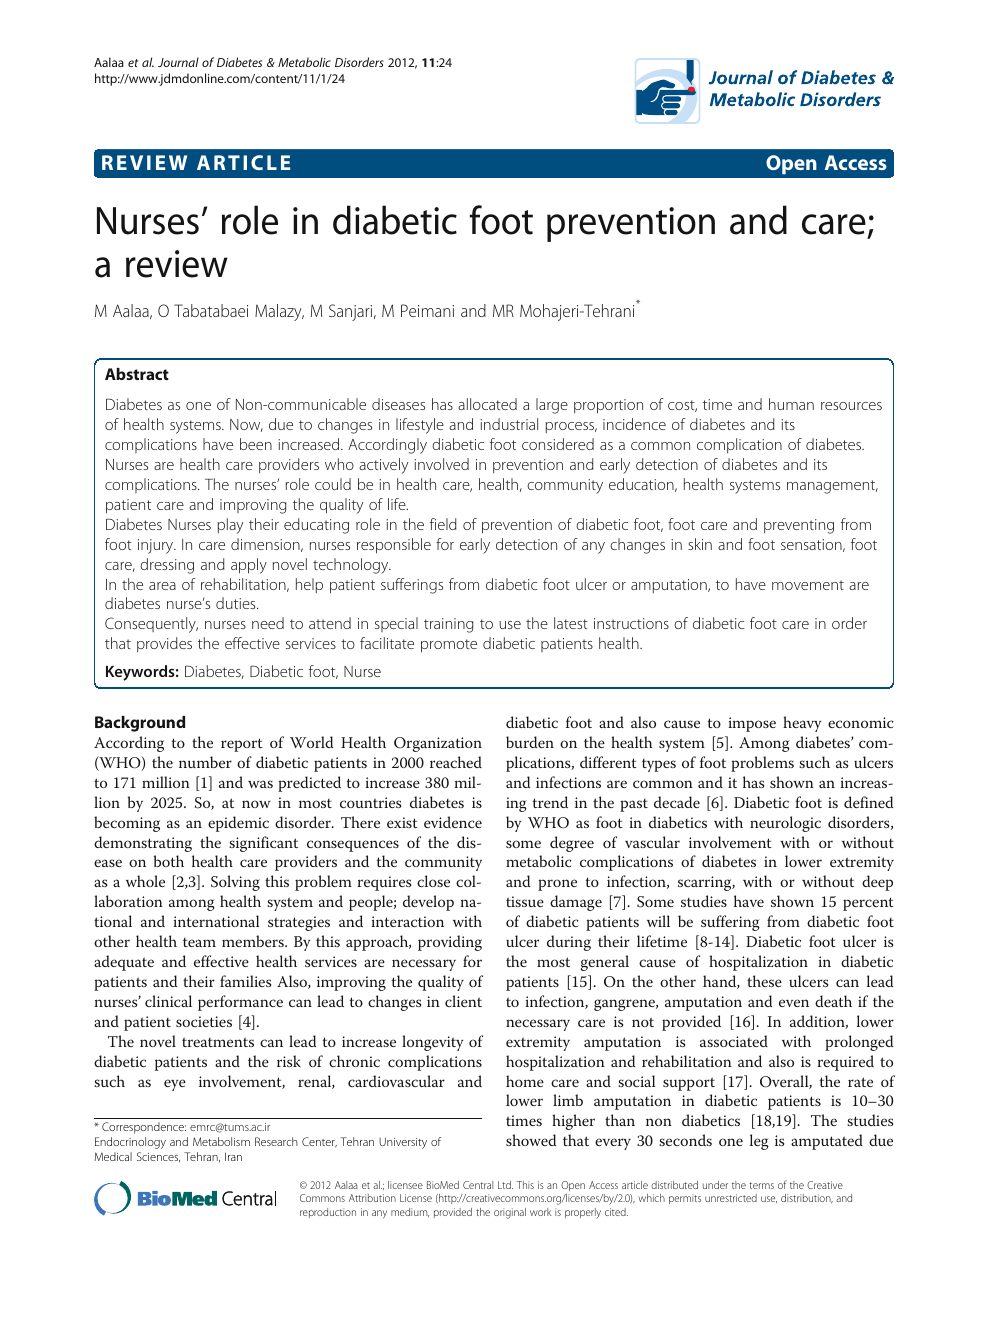 nurses role in diabetes care